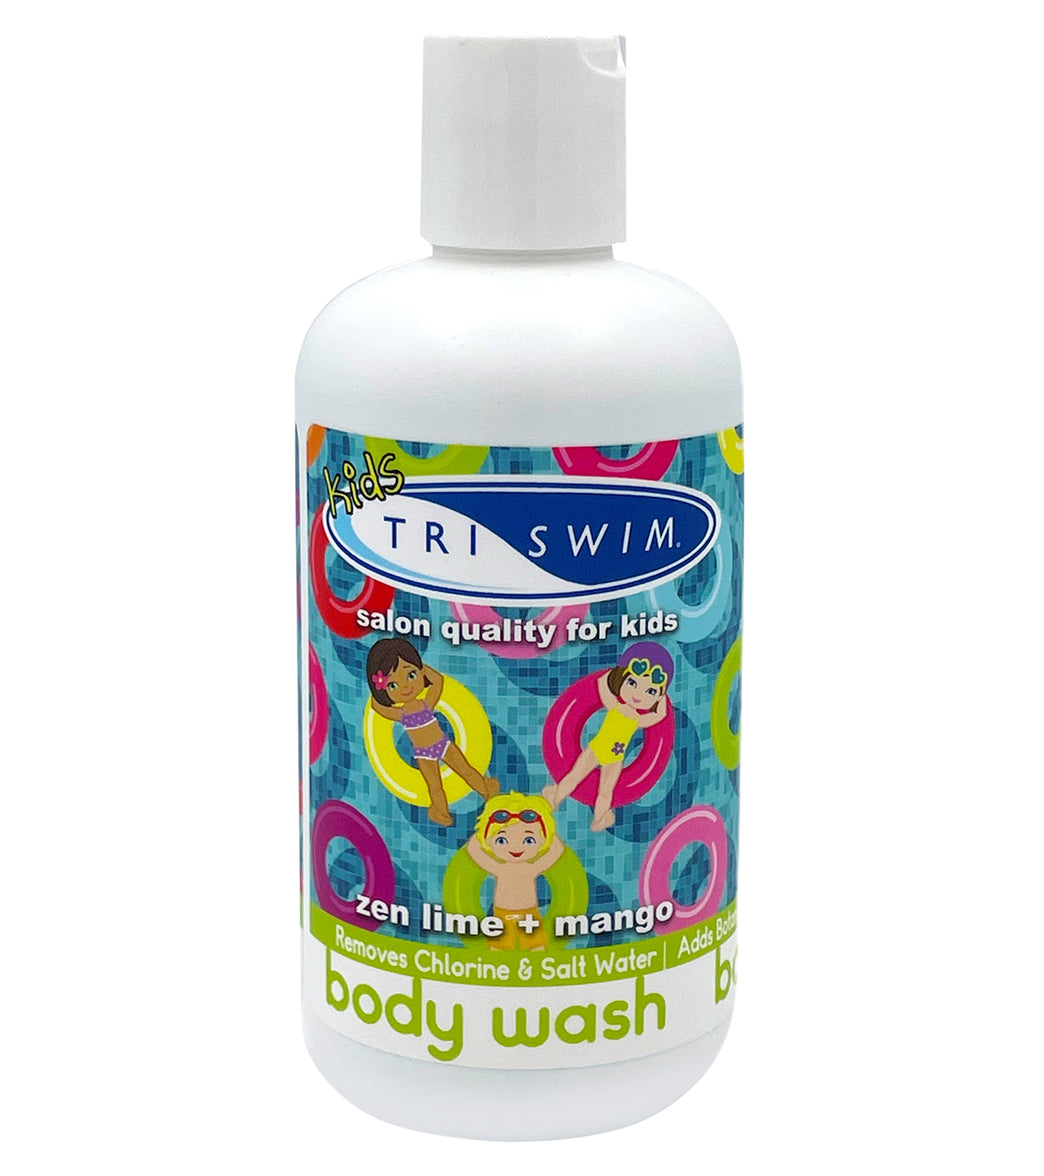 Zealios  Swim & Sport 32 oz Shampoo to remove chlorine, sweat & salts –  zealios